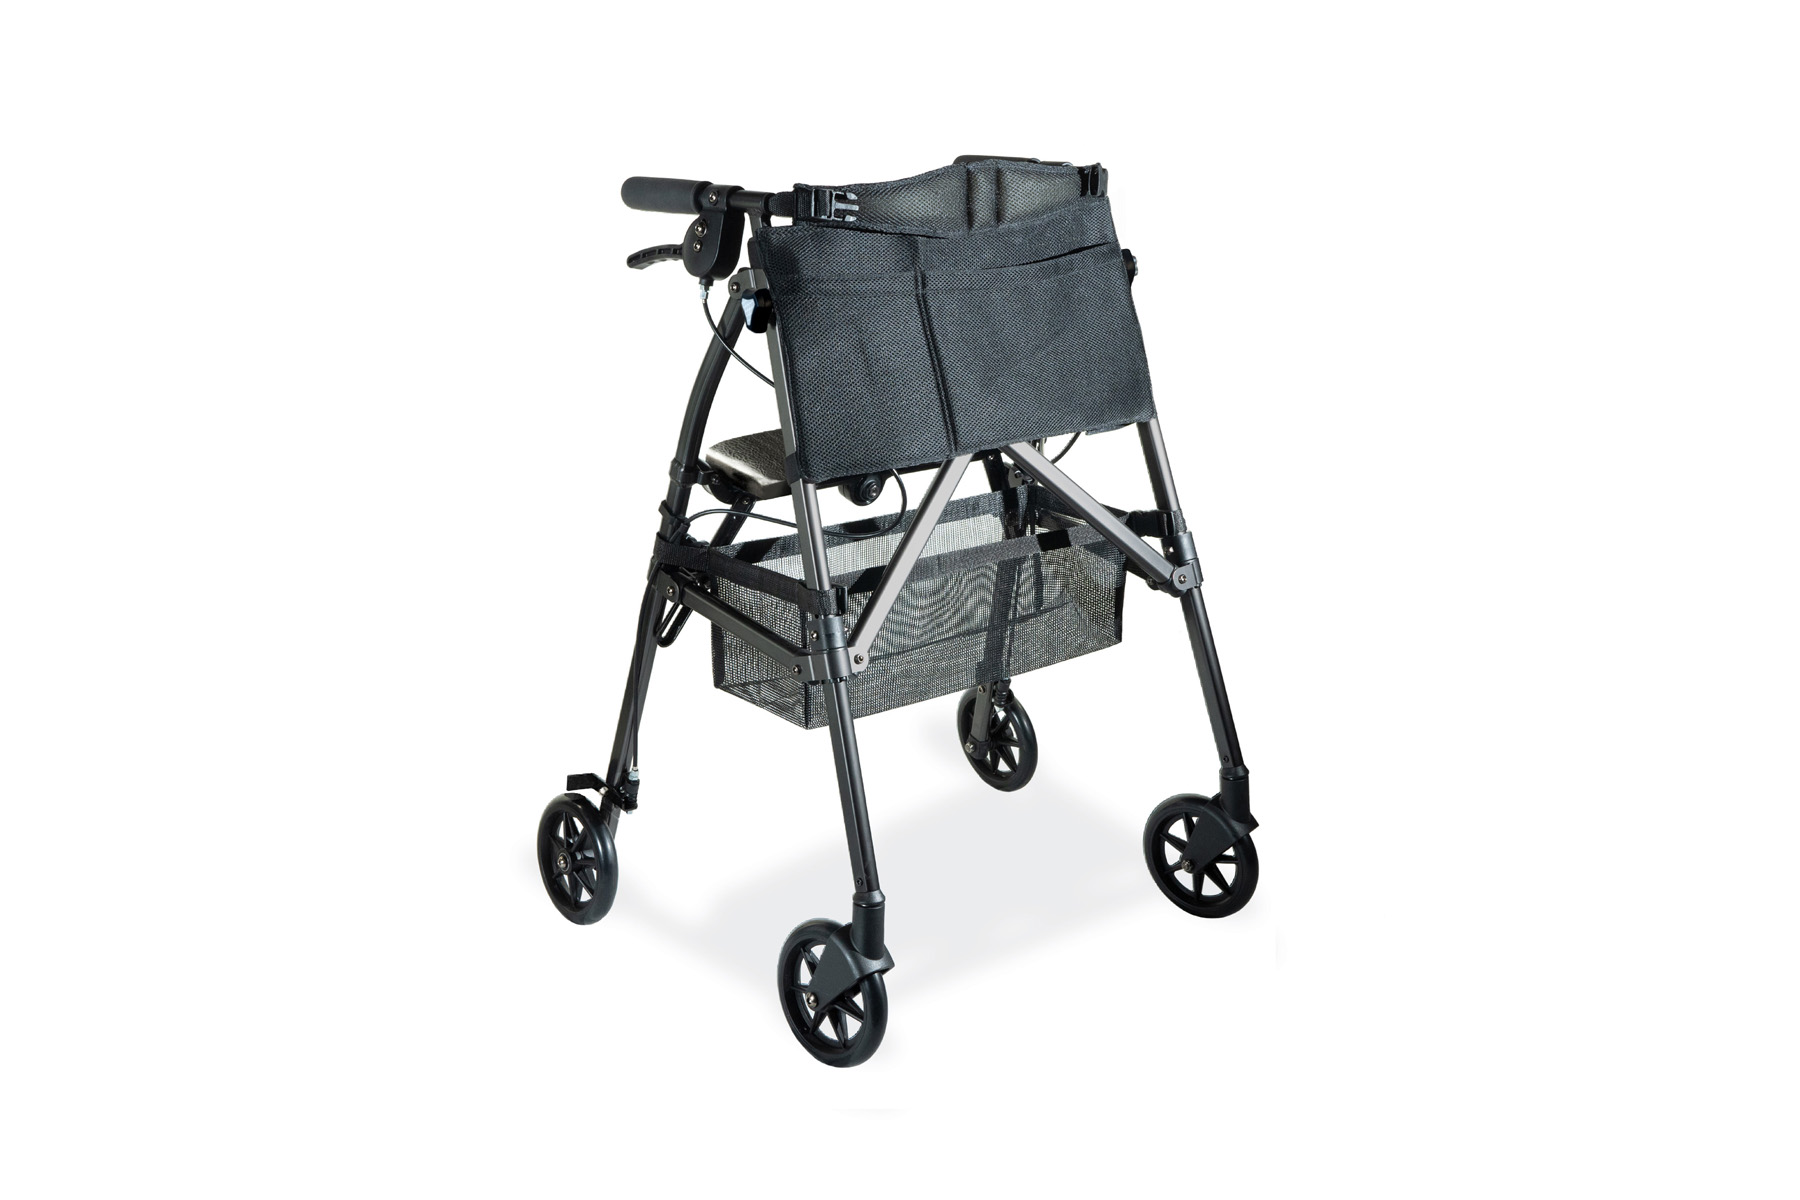 Zijdelings Luxe Zenuwinzinking Stander EZ Fold-N-Go Rollator - Lightweight Folding Travel Walking Aid